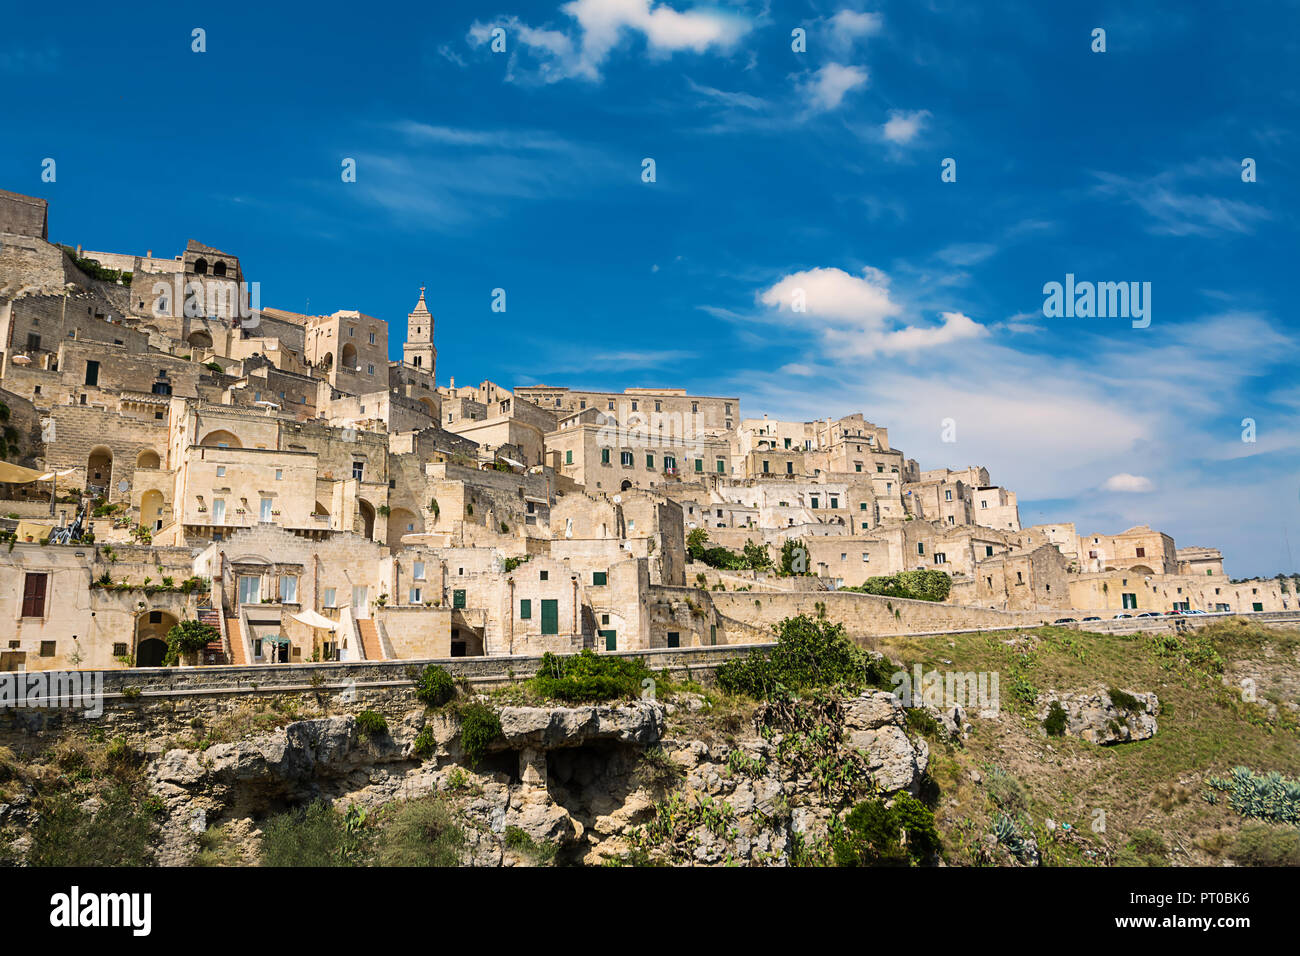 Panorama of the old city (Colle della Civita) of Matera, European Capital of Culture 2019 Stock Photo